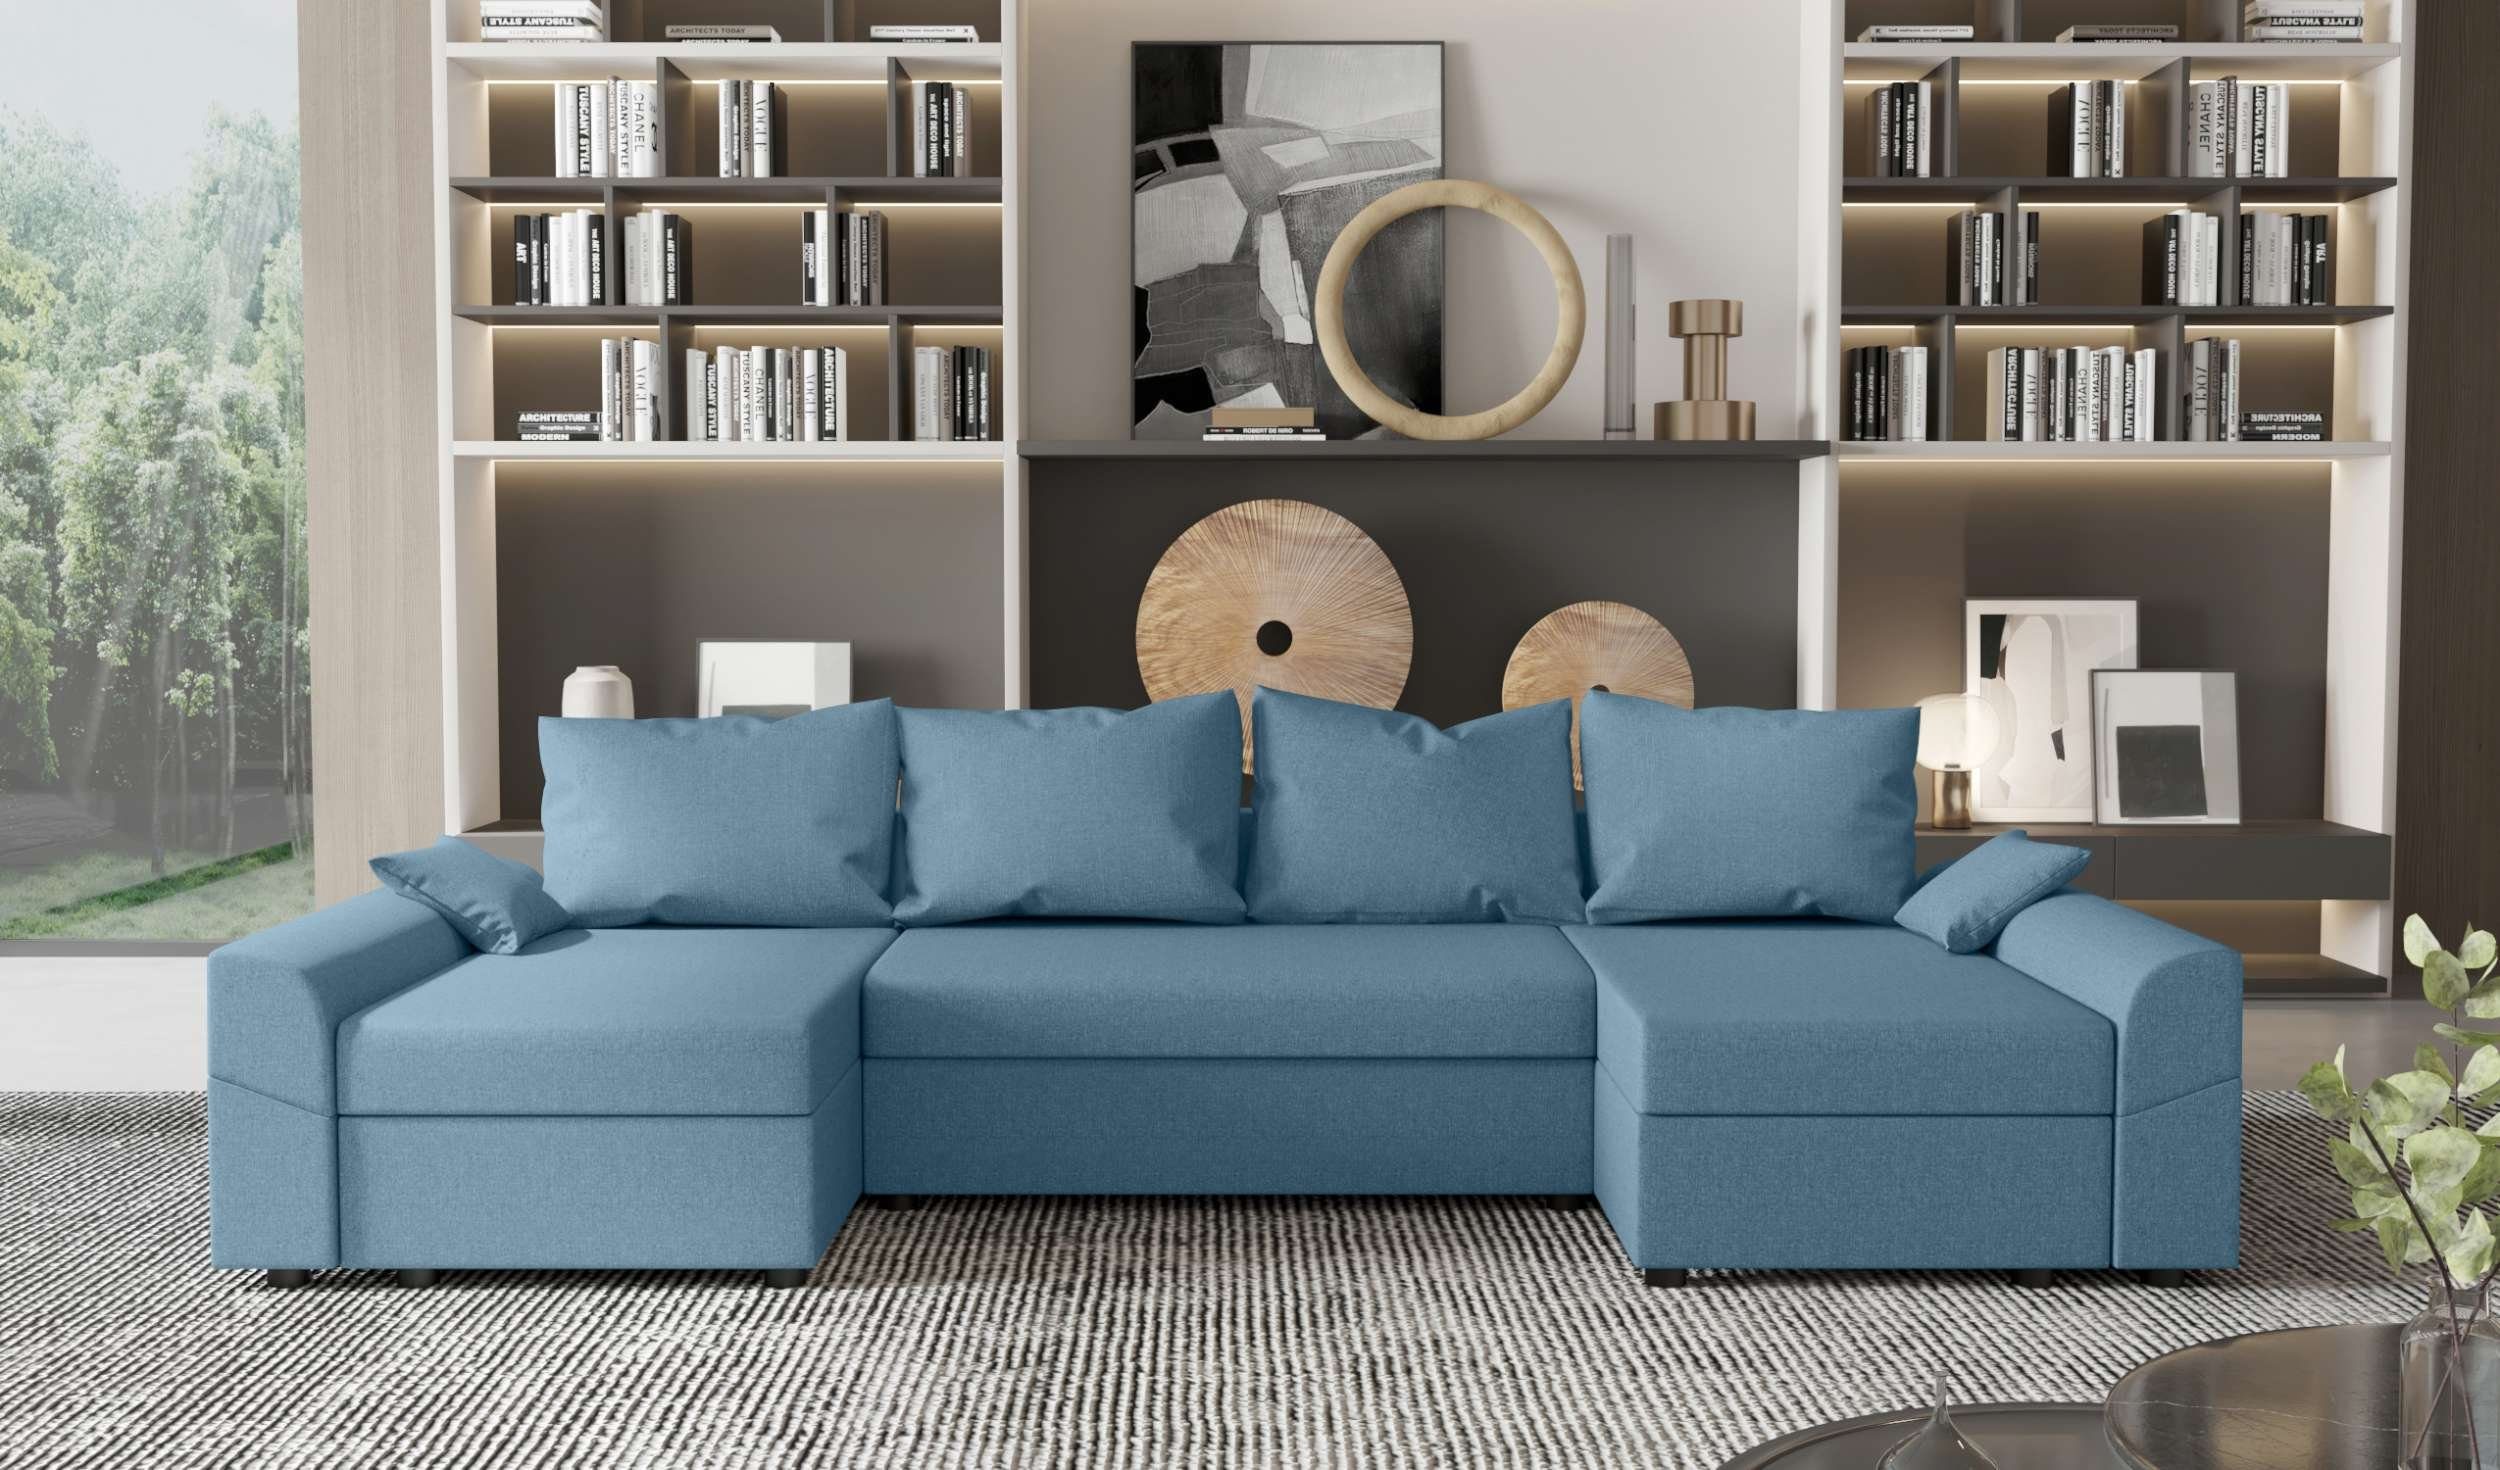 Bettkasten, Sofa, Eckcouch, mit Wohnlandschaft Bettfunktion, mit Stylefy Modern U-Form, Design Sitzkomfort, Carolina,